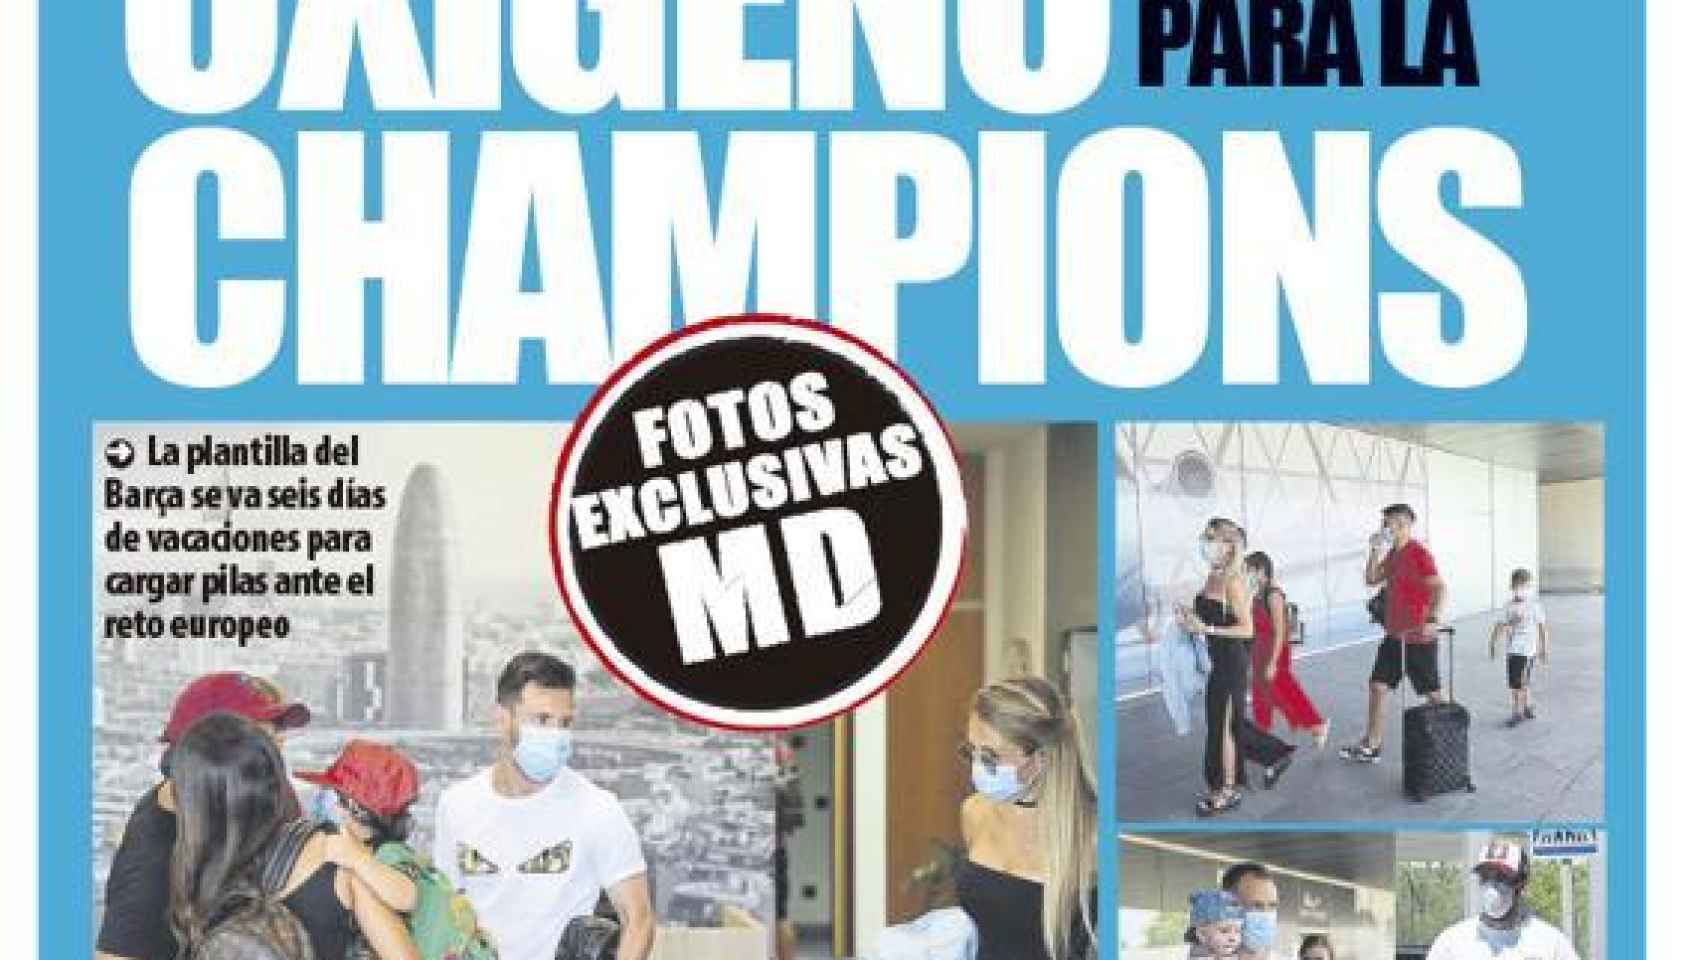 La portada del diario Mundo Deportivo (22/07/2020)